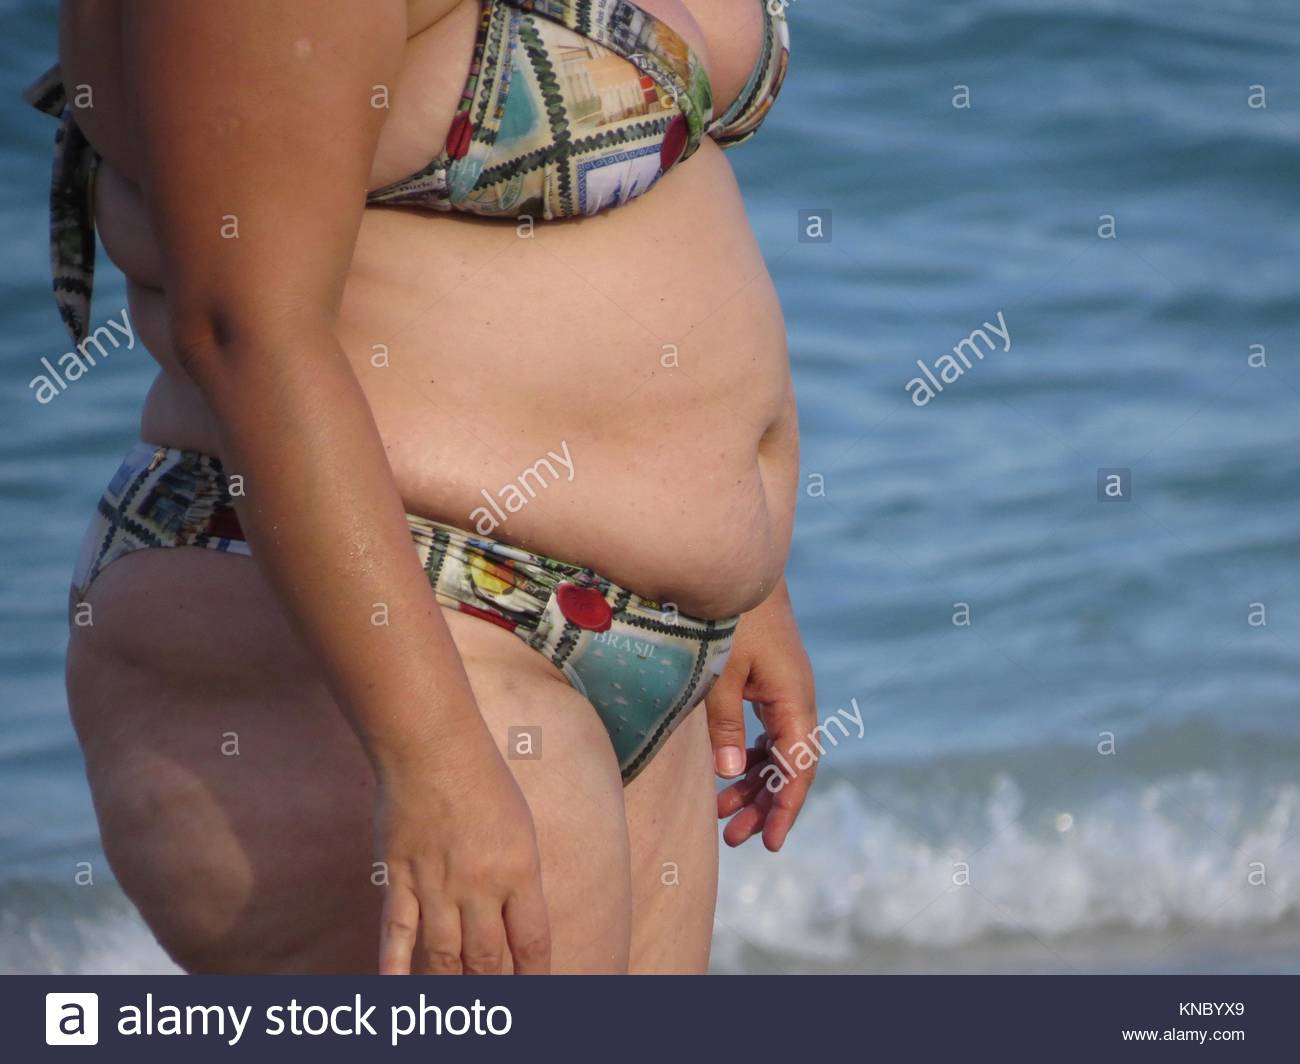 Bikini old fat women